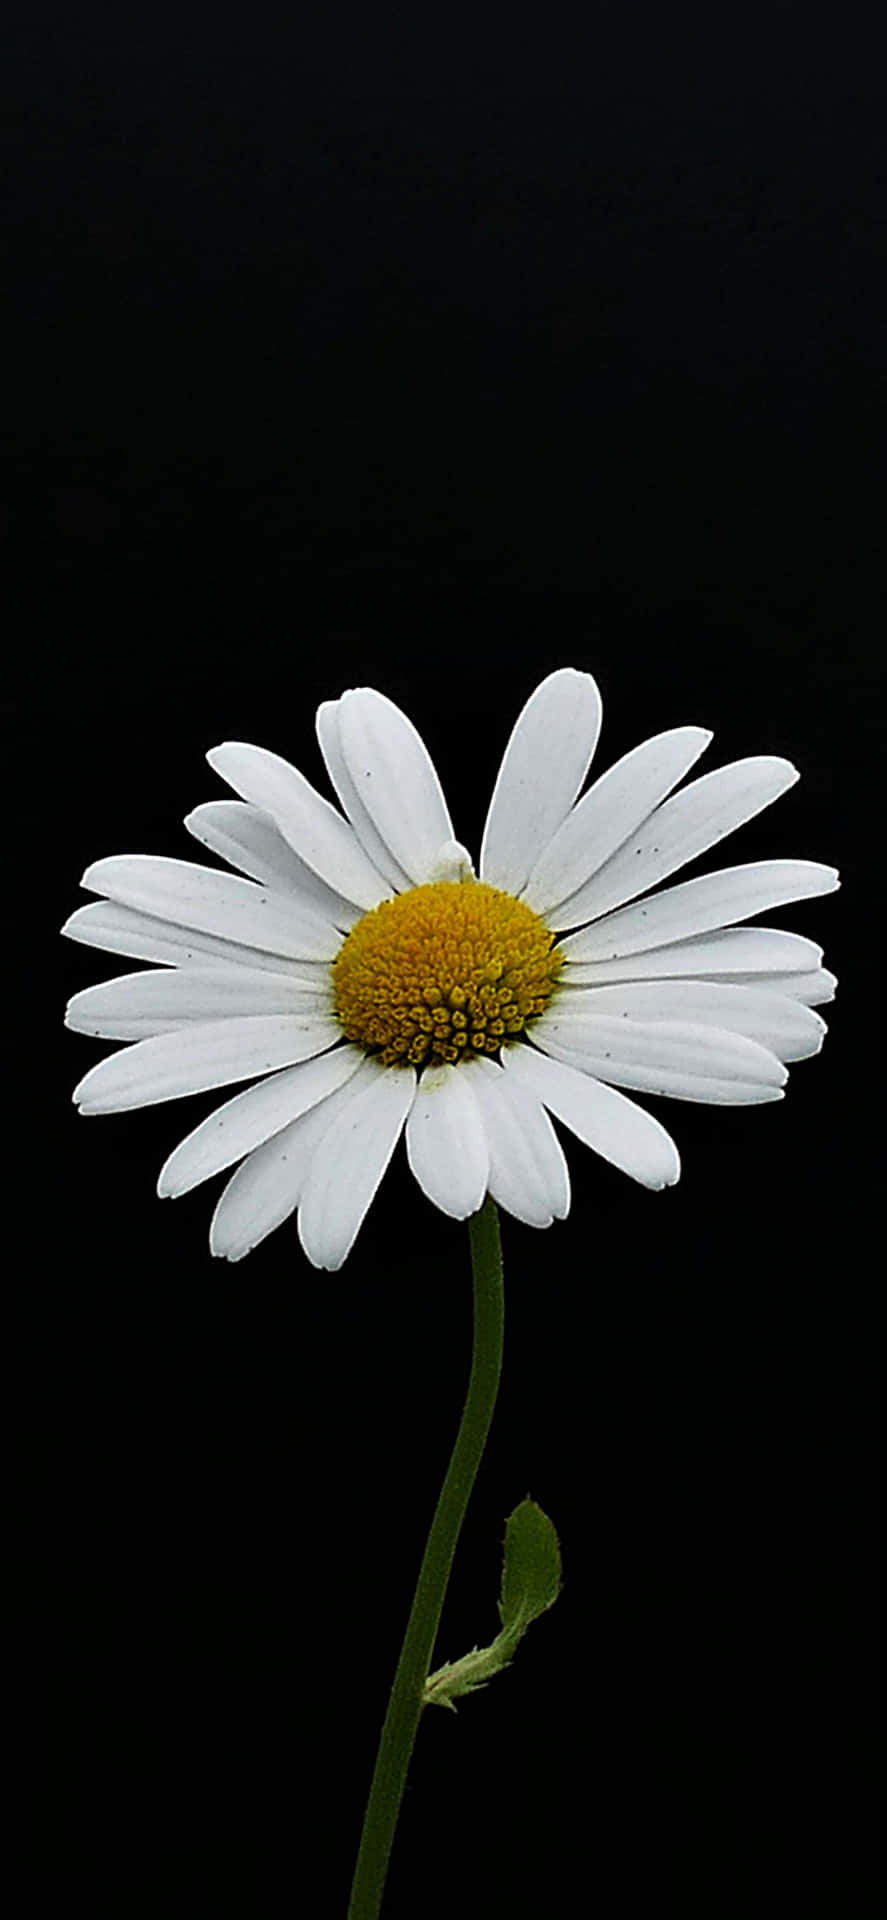 Belezadelicada De Uma Flor Preta E Branca. Papel de Parede